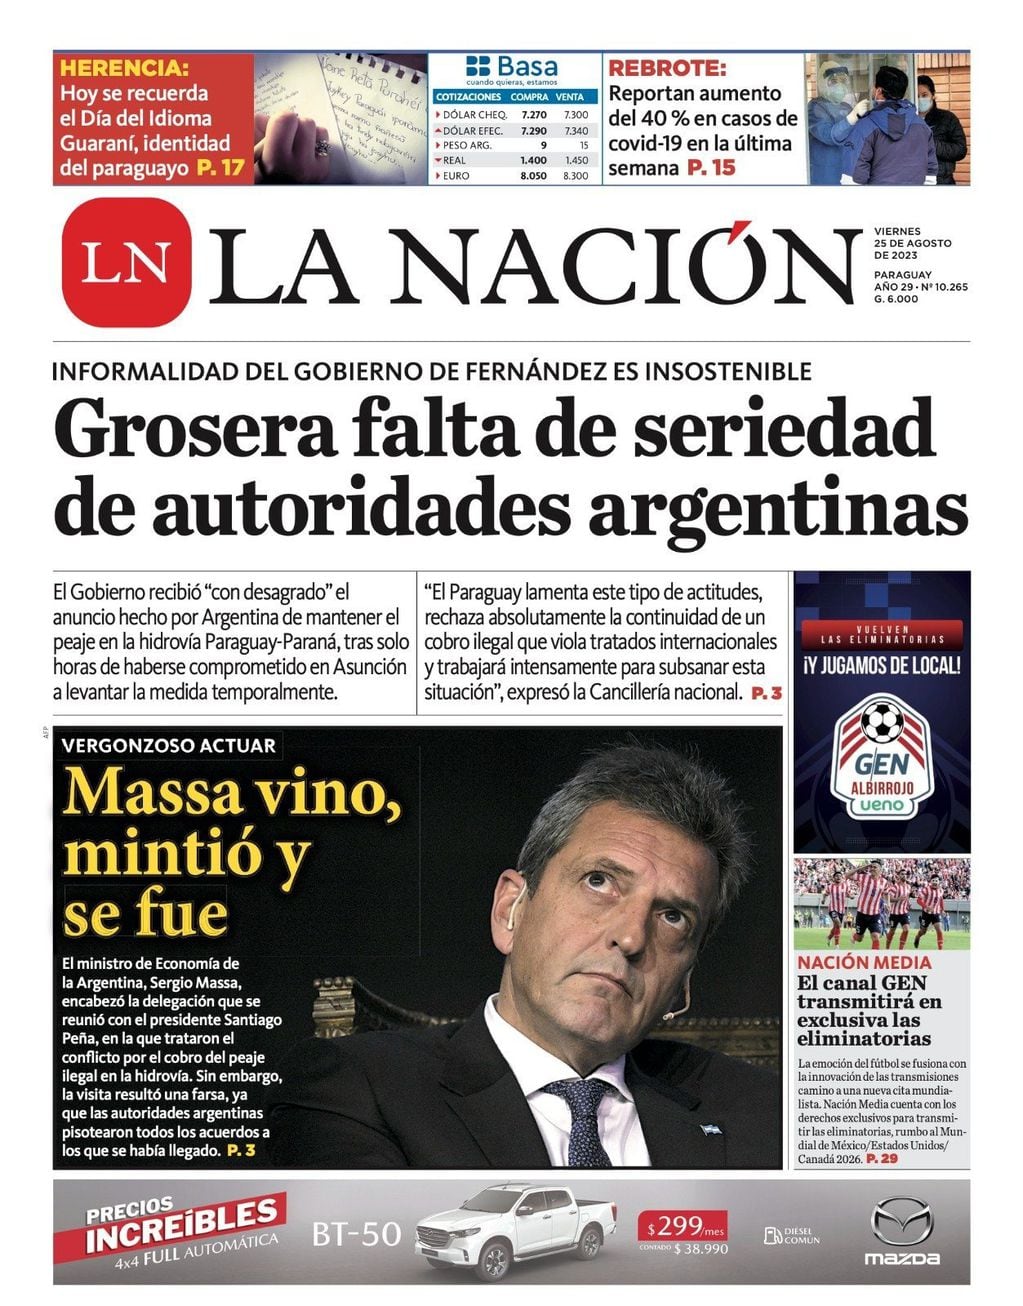 El diario La Nación de Paraguay trató de mentiroso a Sergio Massa y lo acusa de incumplir una promesa sobre el peaje en la hidrovía.